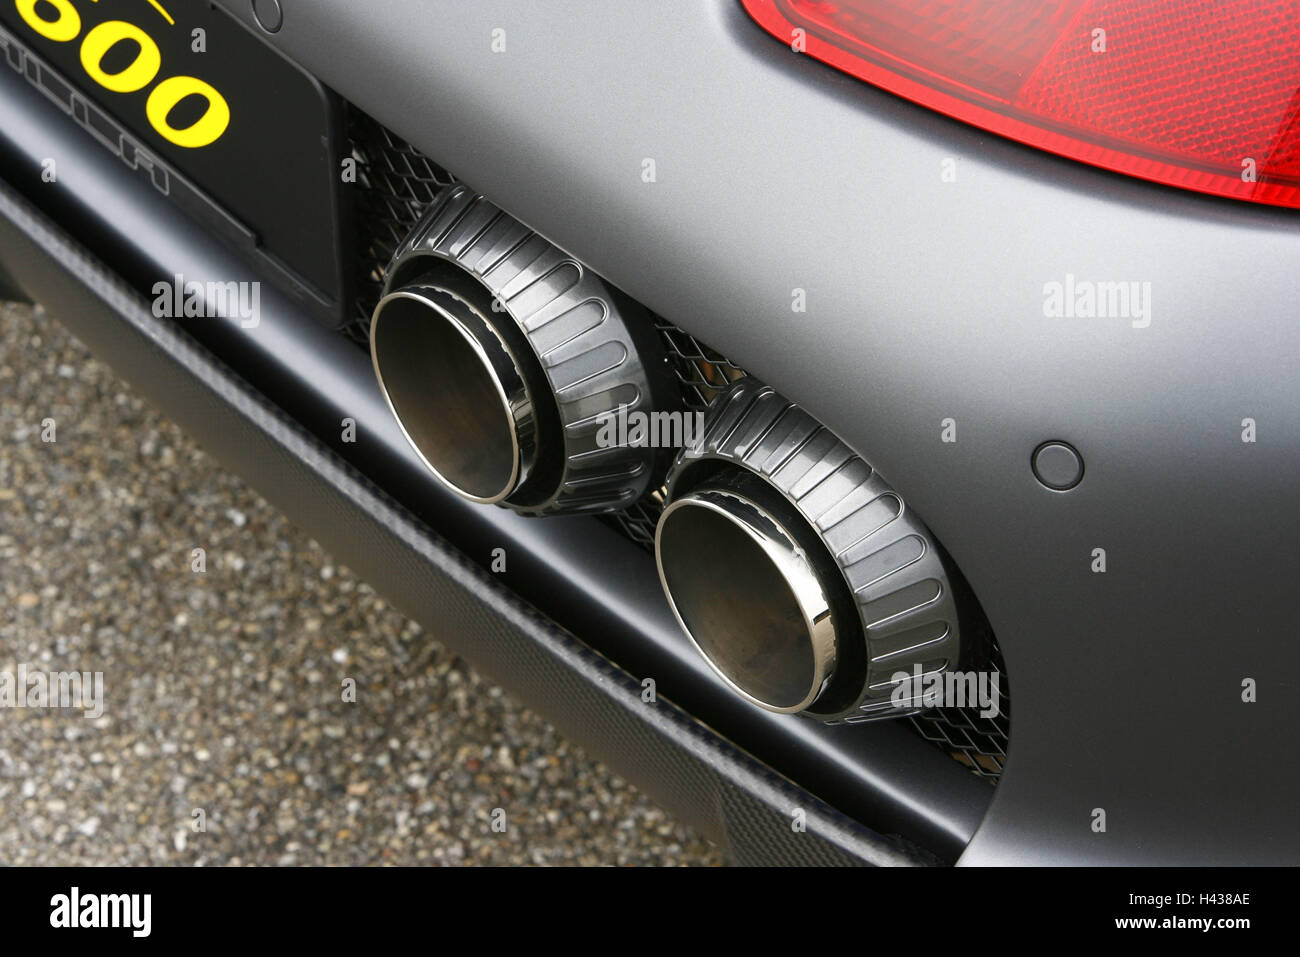 Gemballa Porsche GTR 600 Avalanche, matt black, detail, rear, Stock Photo